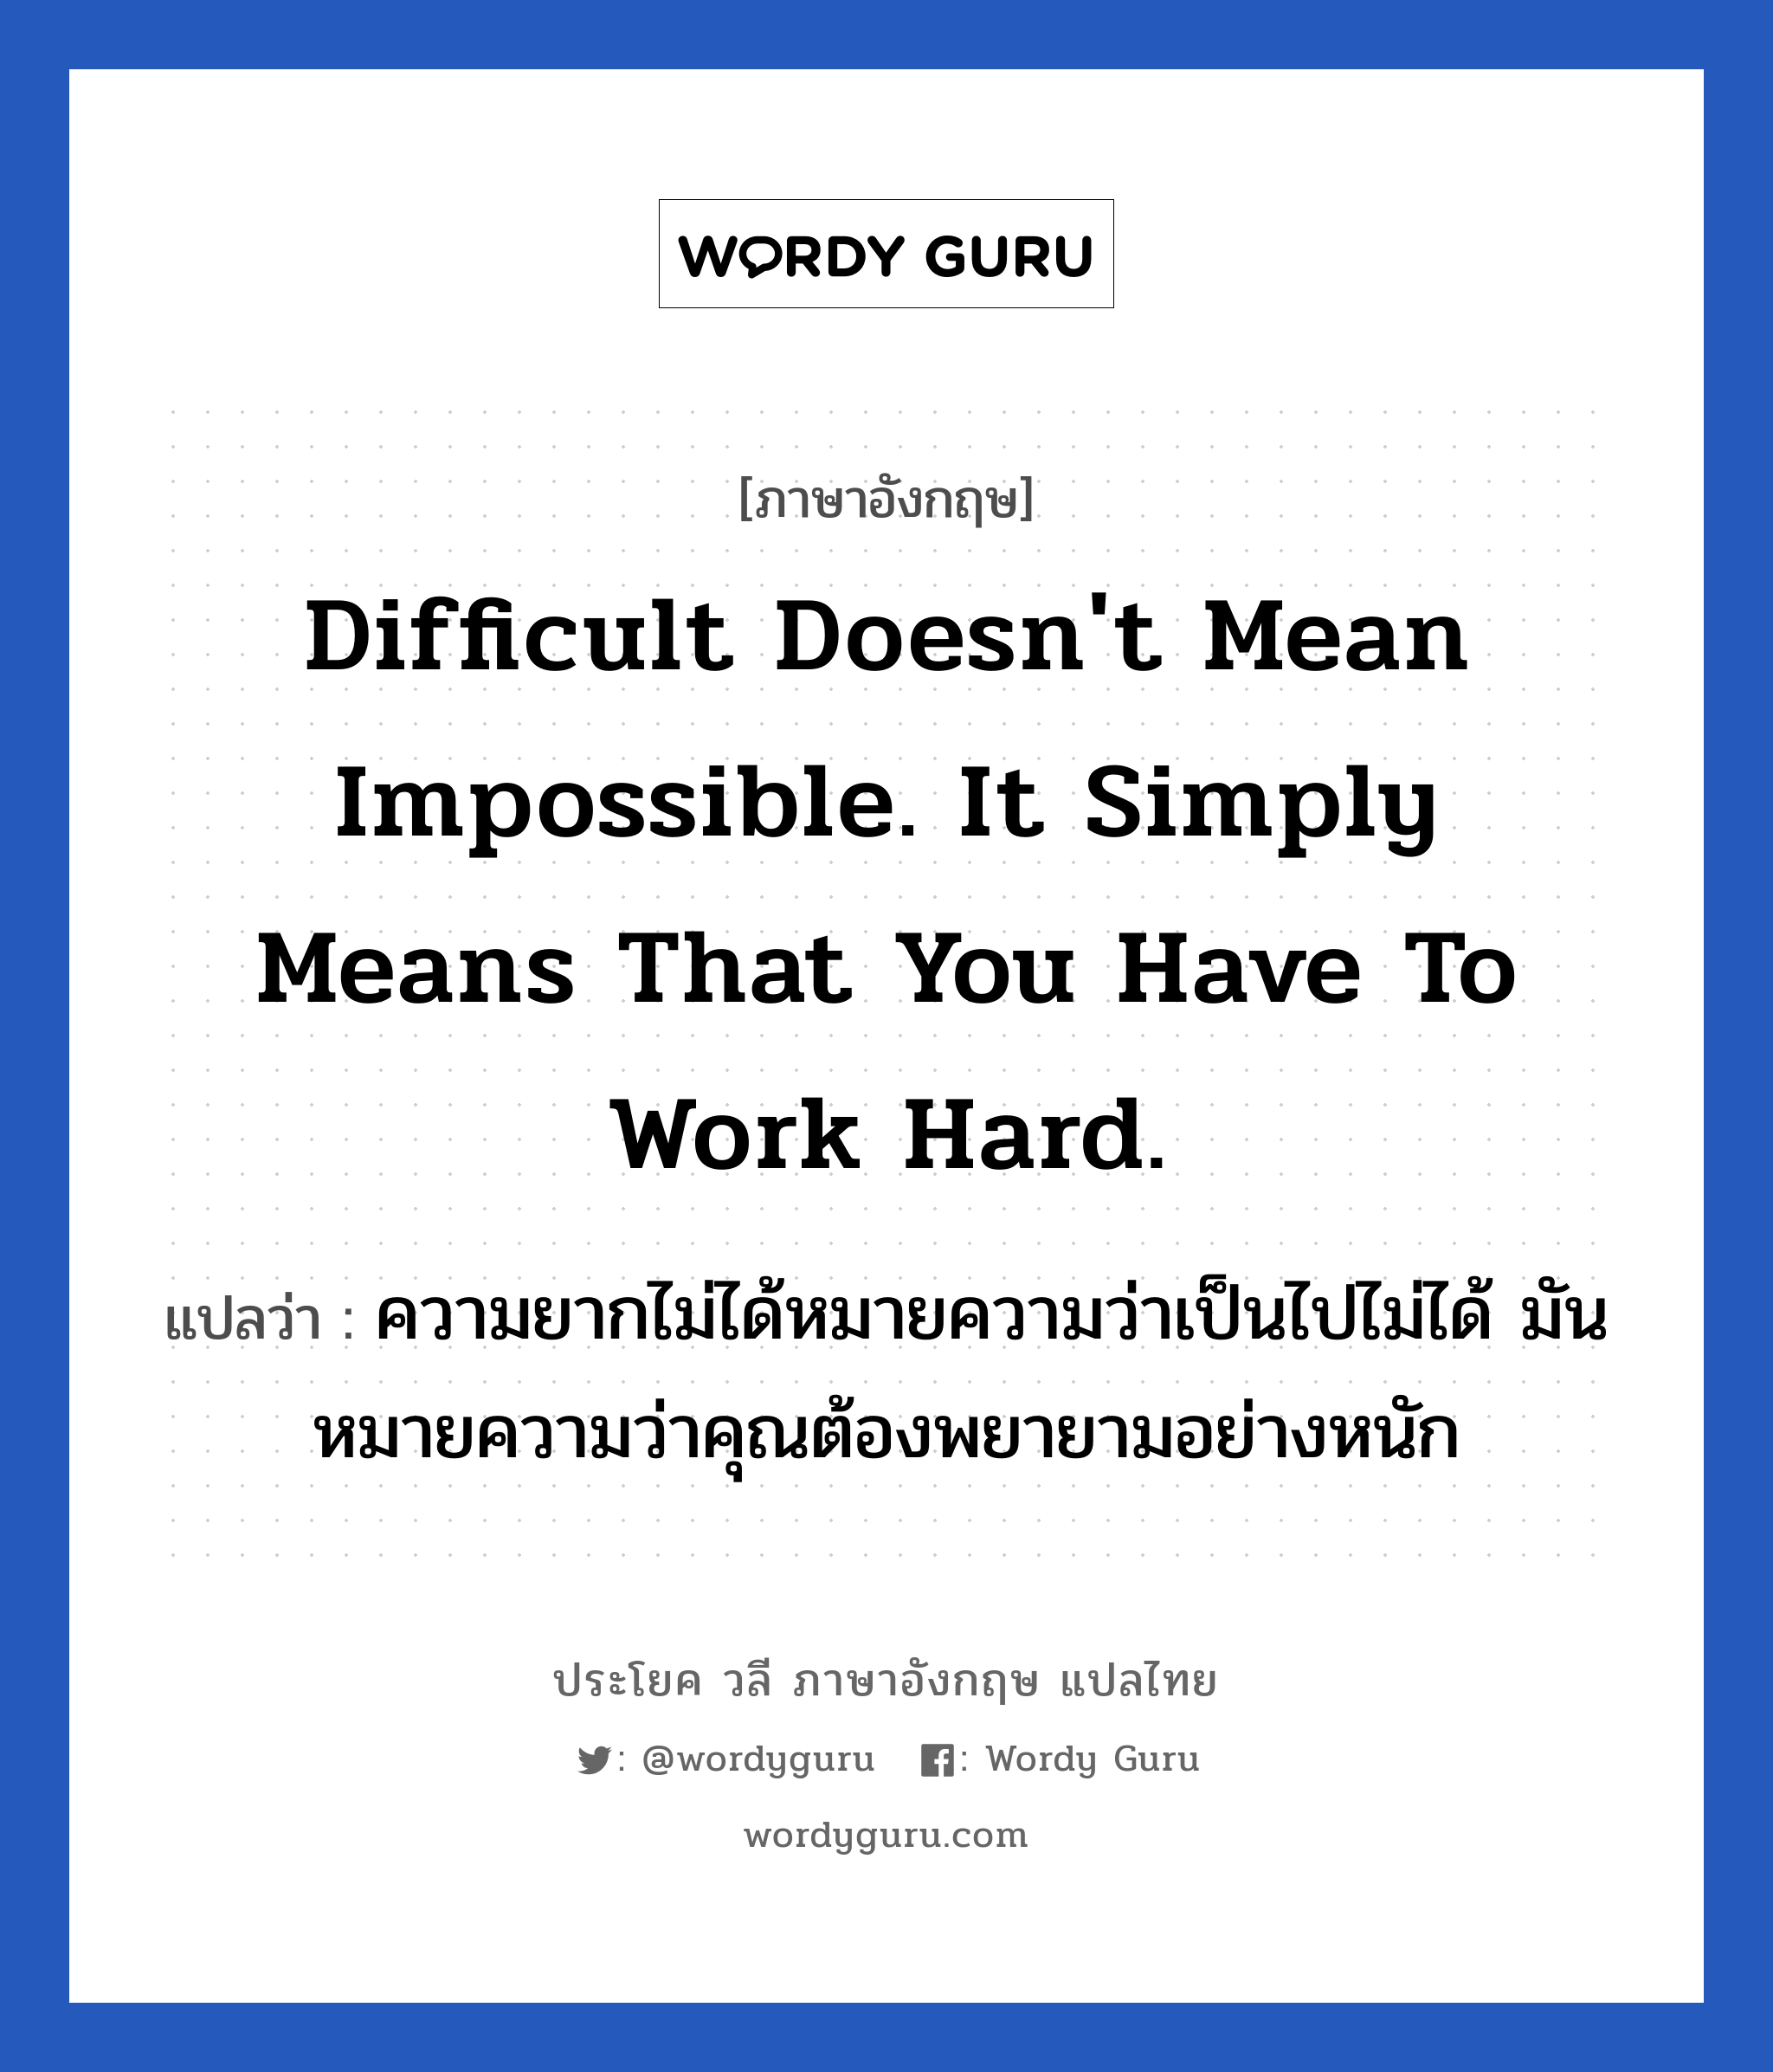 Difficult doesn't mean impossible. It simply means that you have to work hard. แปลว่า? เป็นประโยคในกลุ่มประเภท ในที่ทำงาน, วลีภาษาอังกฤษ Difficult doesn't mean impossible. It simply means that you have to work hard. แปลว่า ความยากไม่ได้หมายความว่าเป็นไปไม่ได้ มันหมายความว่าคุณต้องพยายามอย่างหนัก หมวด ในที่ทำงาน